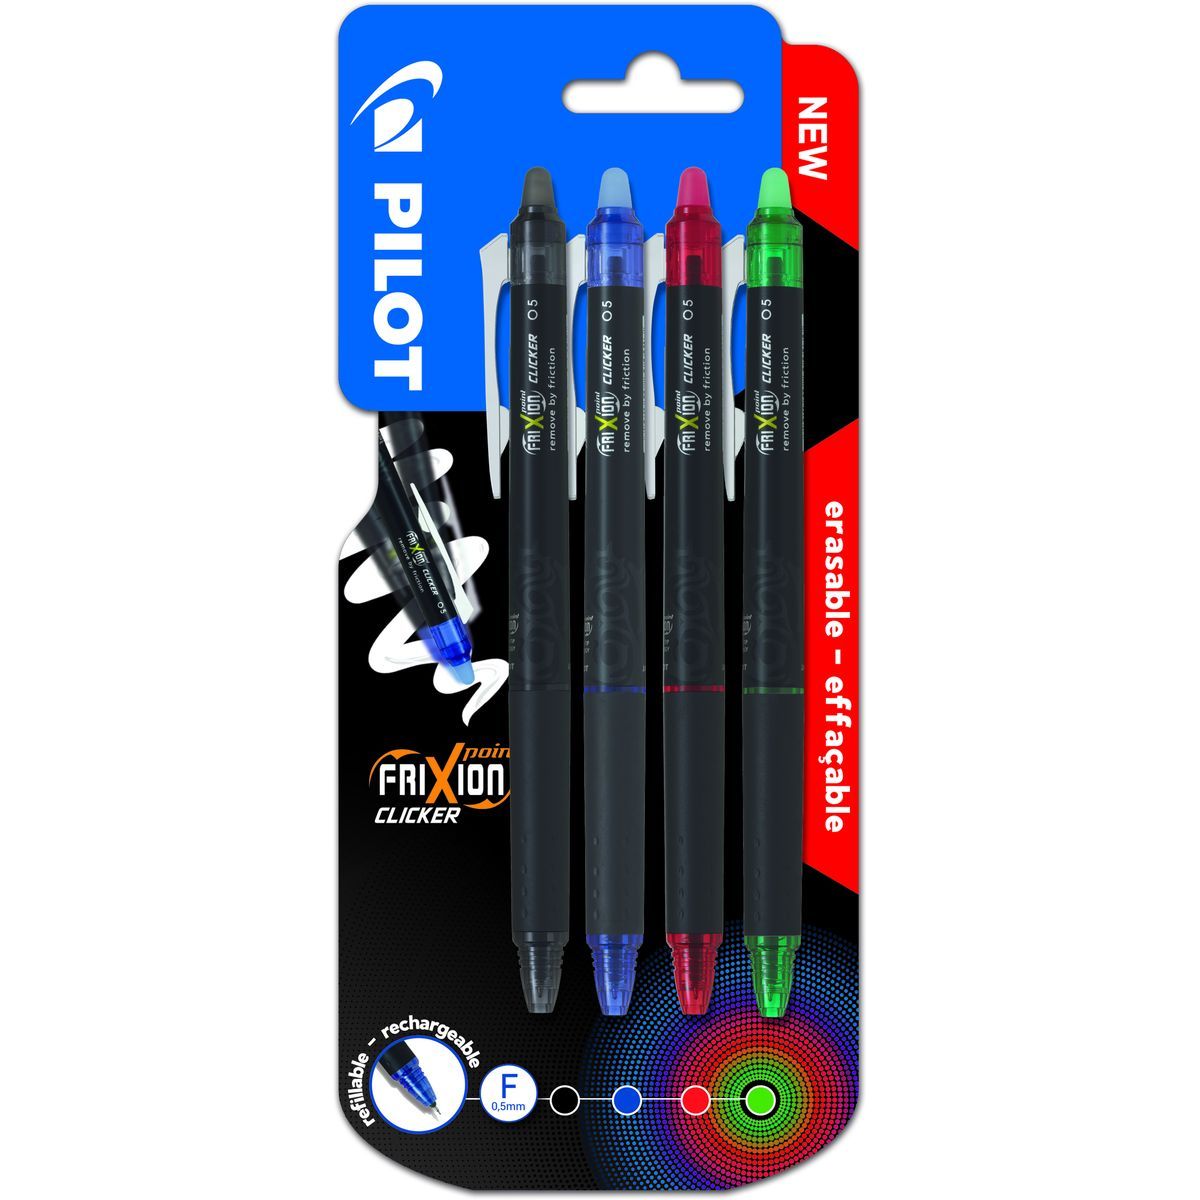 PILOT Lot de 4 stylos bille effaçable rechargeable pointe fine